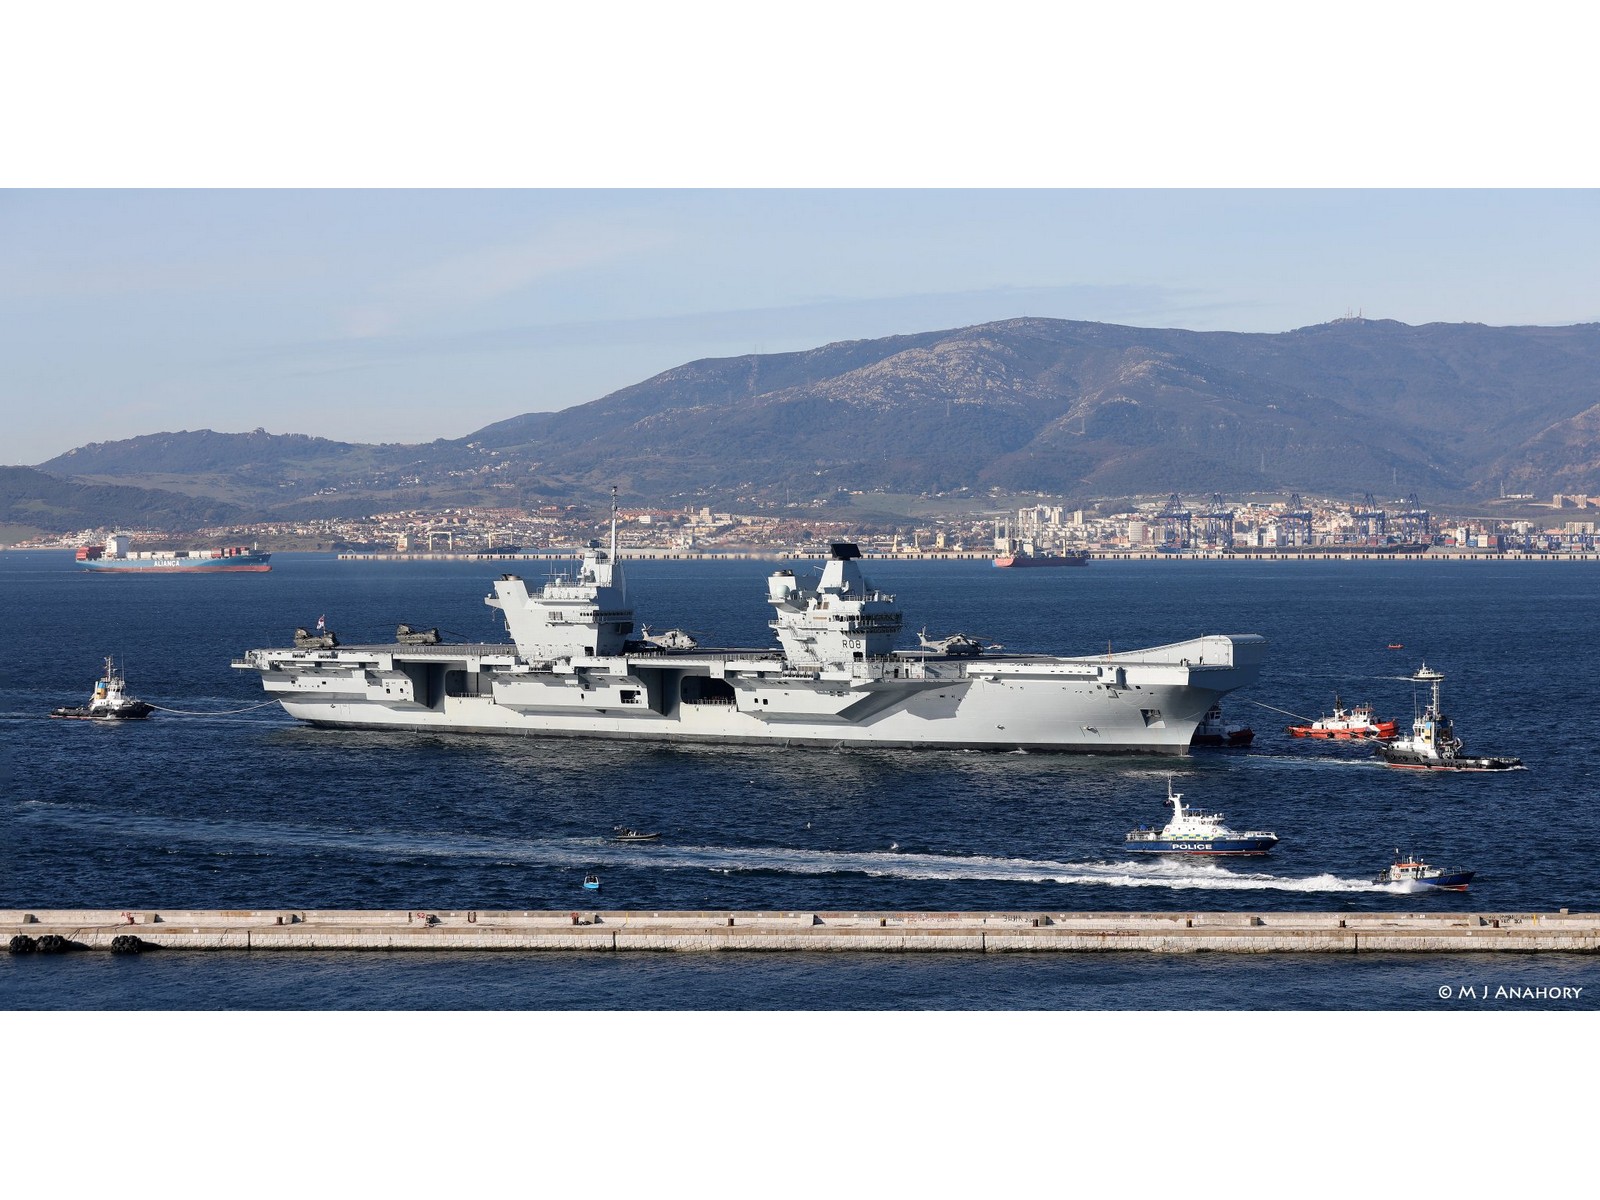 Portaaviones HMS Queen Elizabeth llegando al Puerto de Gibraltar. Al fondo, Algeciras (via Moses Anahory) .jpg